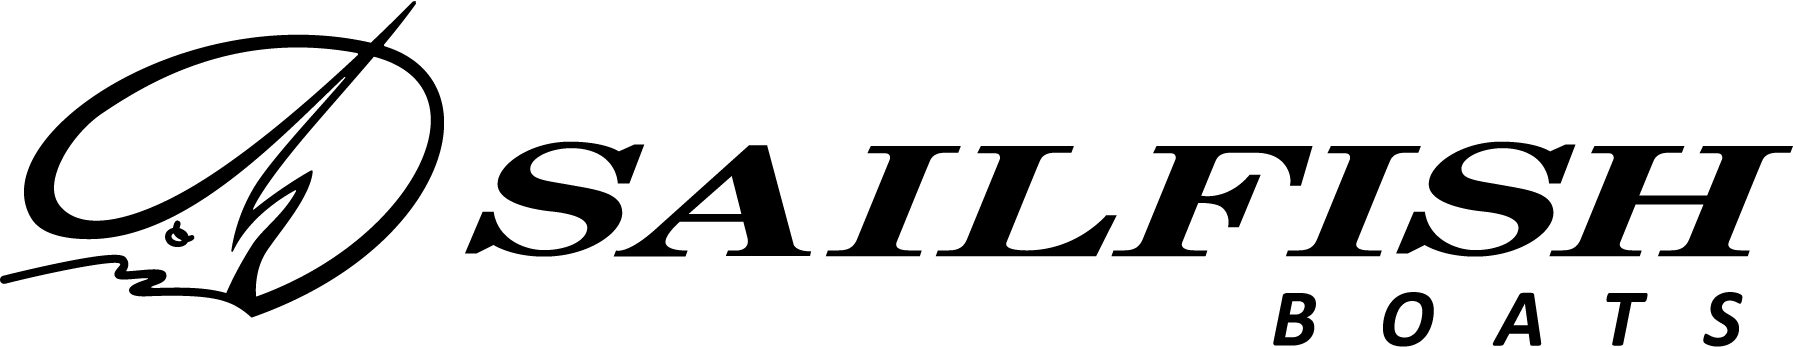 Sailfish brand logo